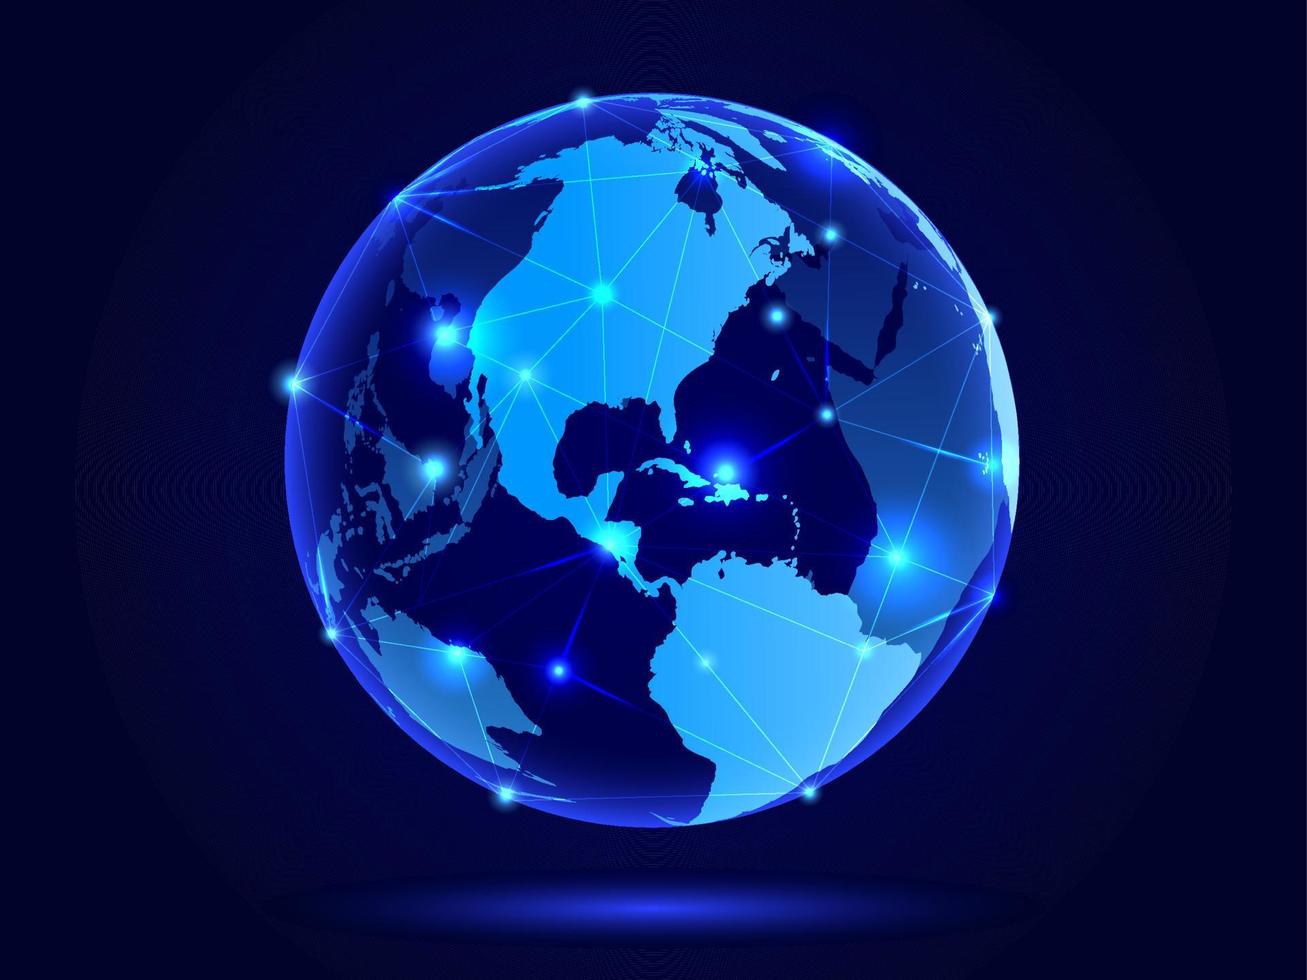 mapa 3d del planeta. mapa del mundo. red social mundial. futuro. fondo azul futurista con el planeta tierra. Internet y tecnología. vector